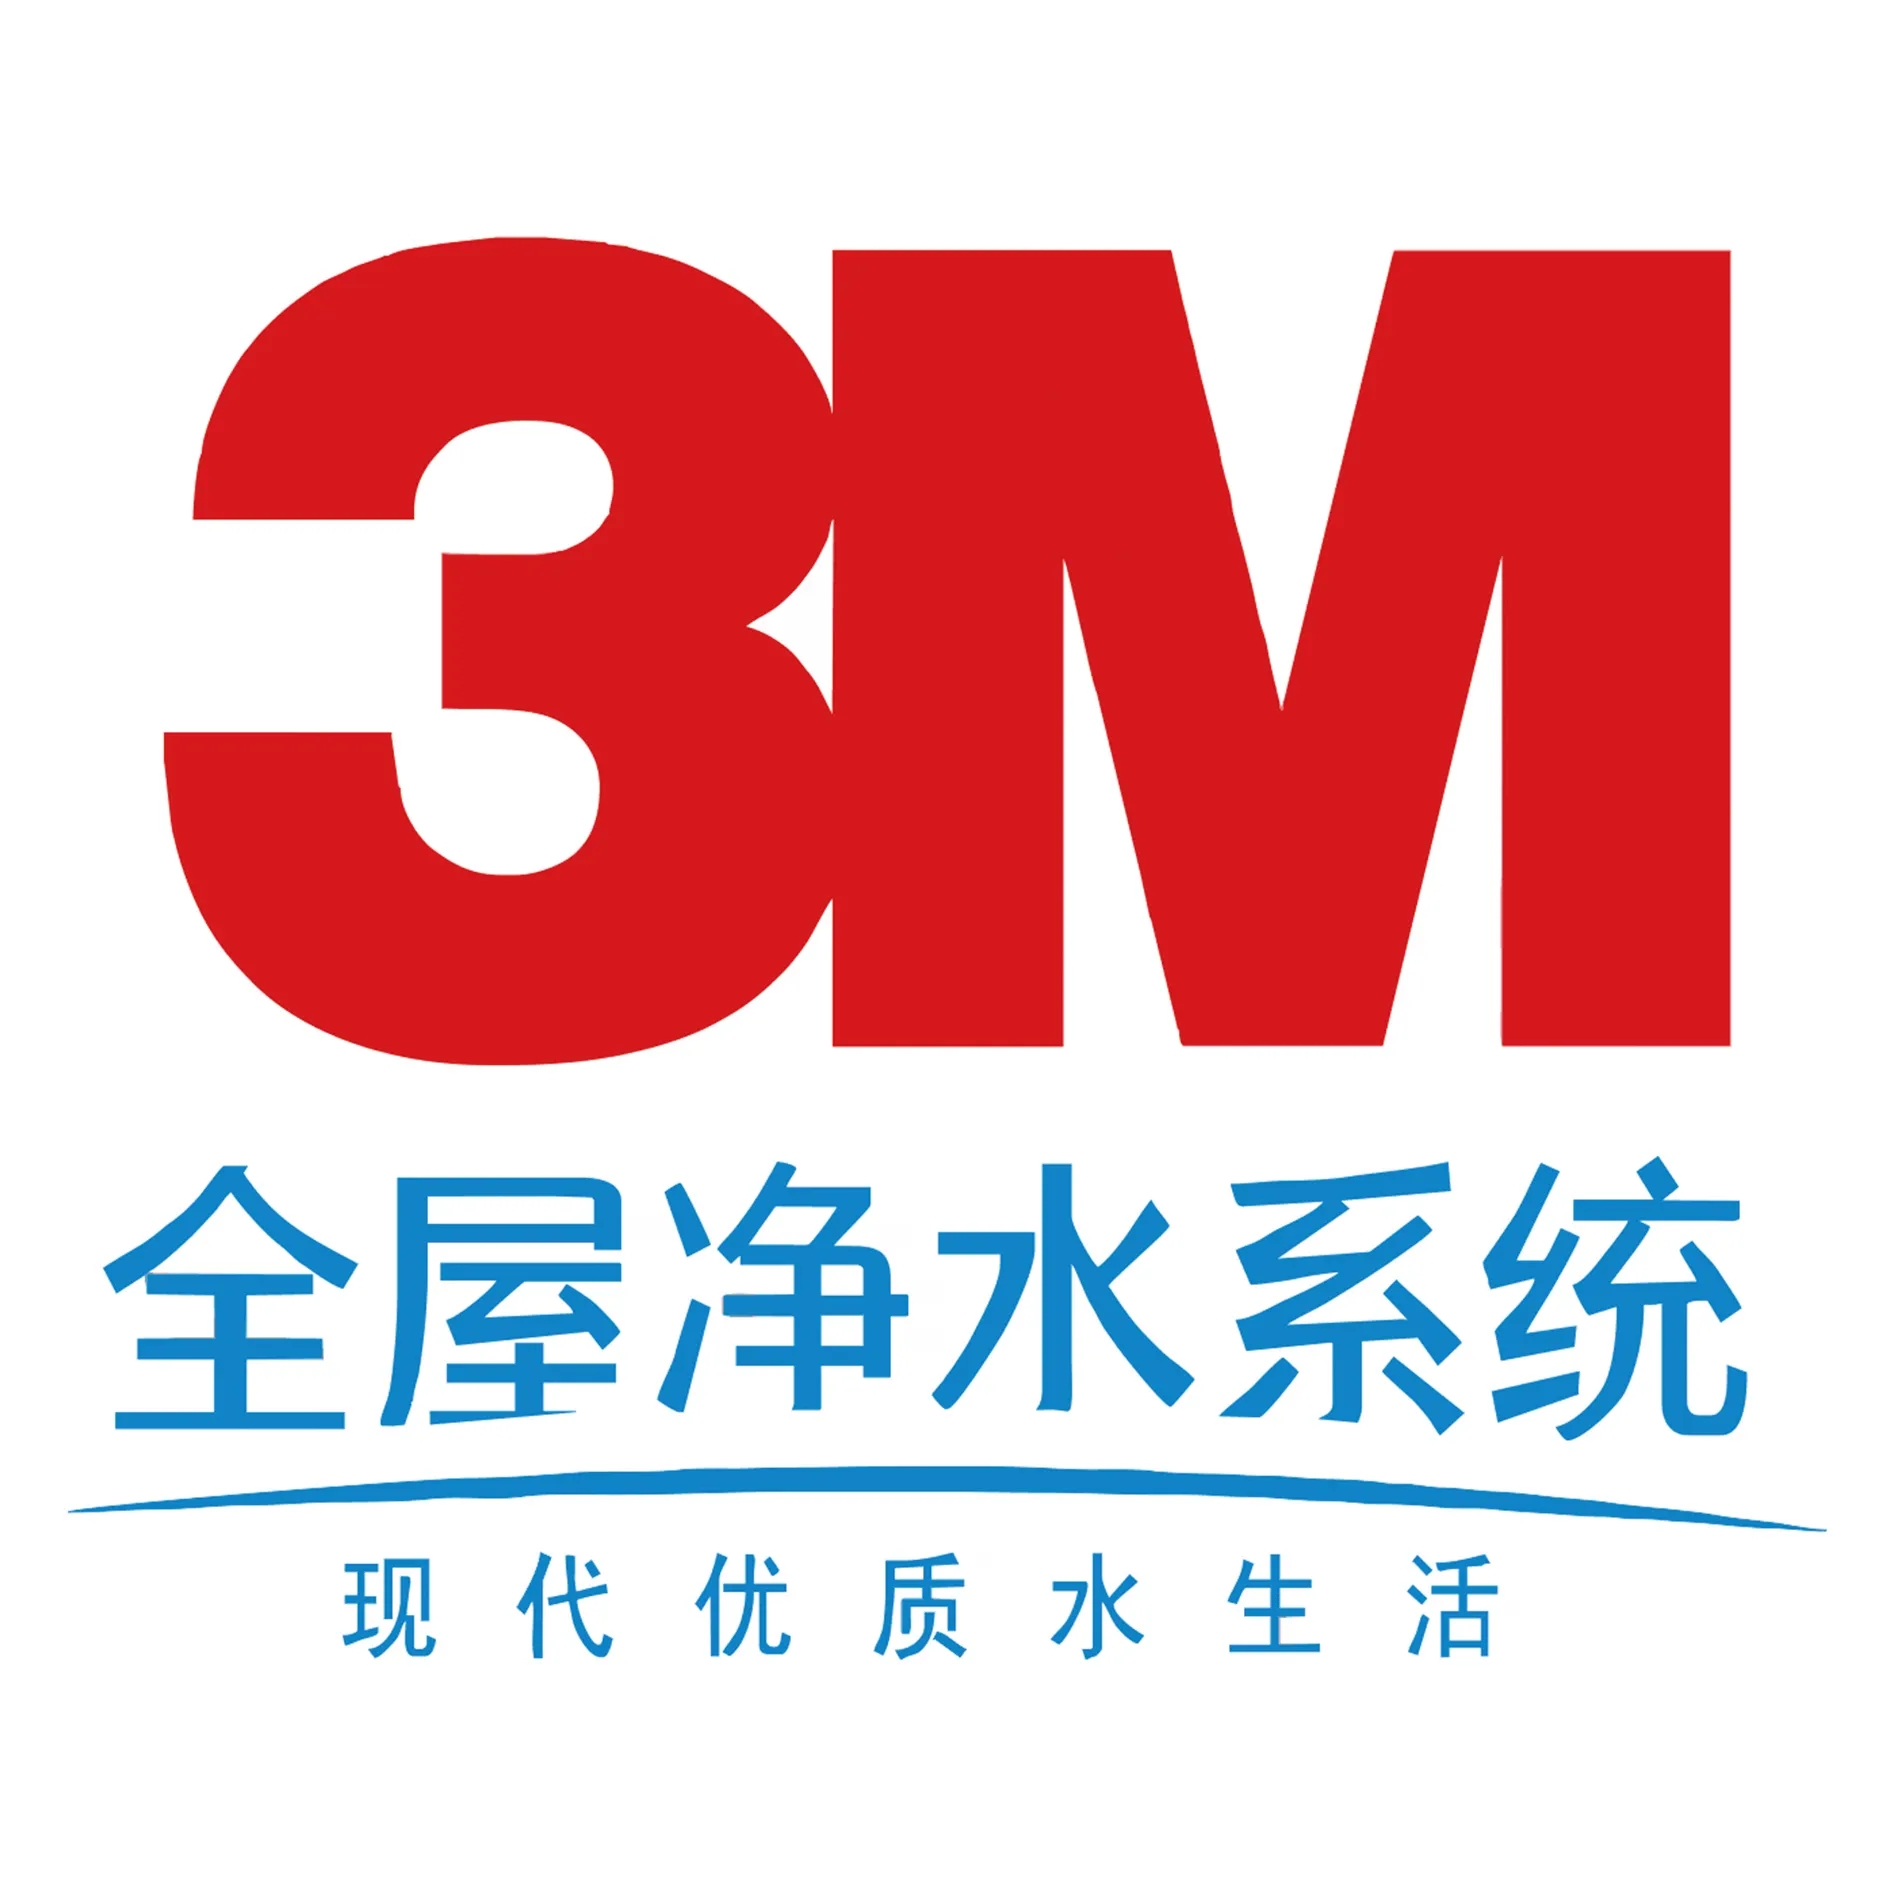 欢迎致电—3M净水品牌服务中心《3M净水机，软水机，全屋净水系统》中国维保网点电话